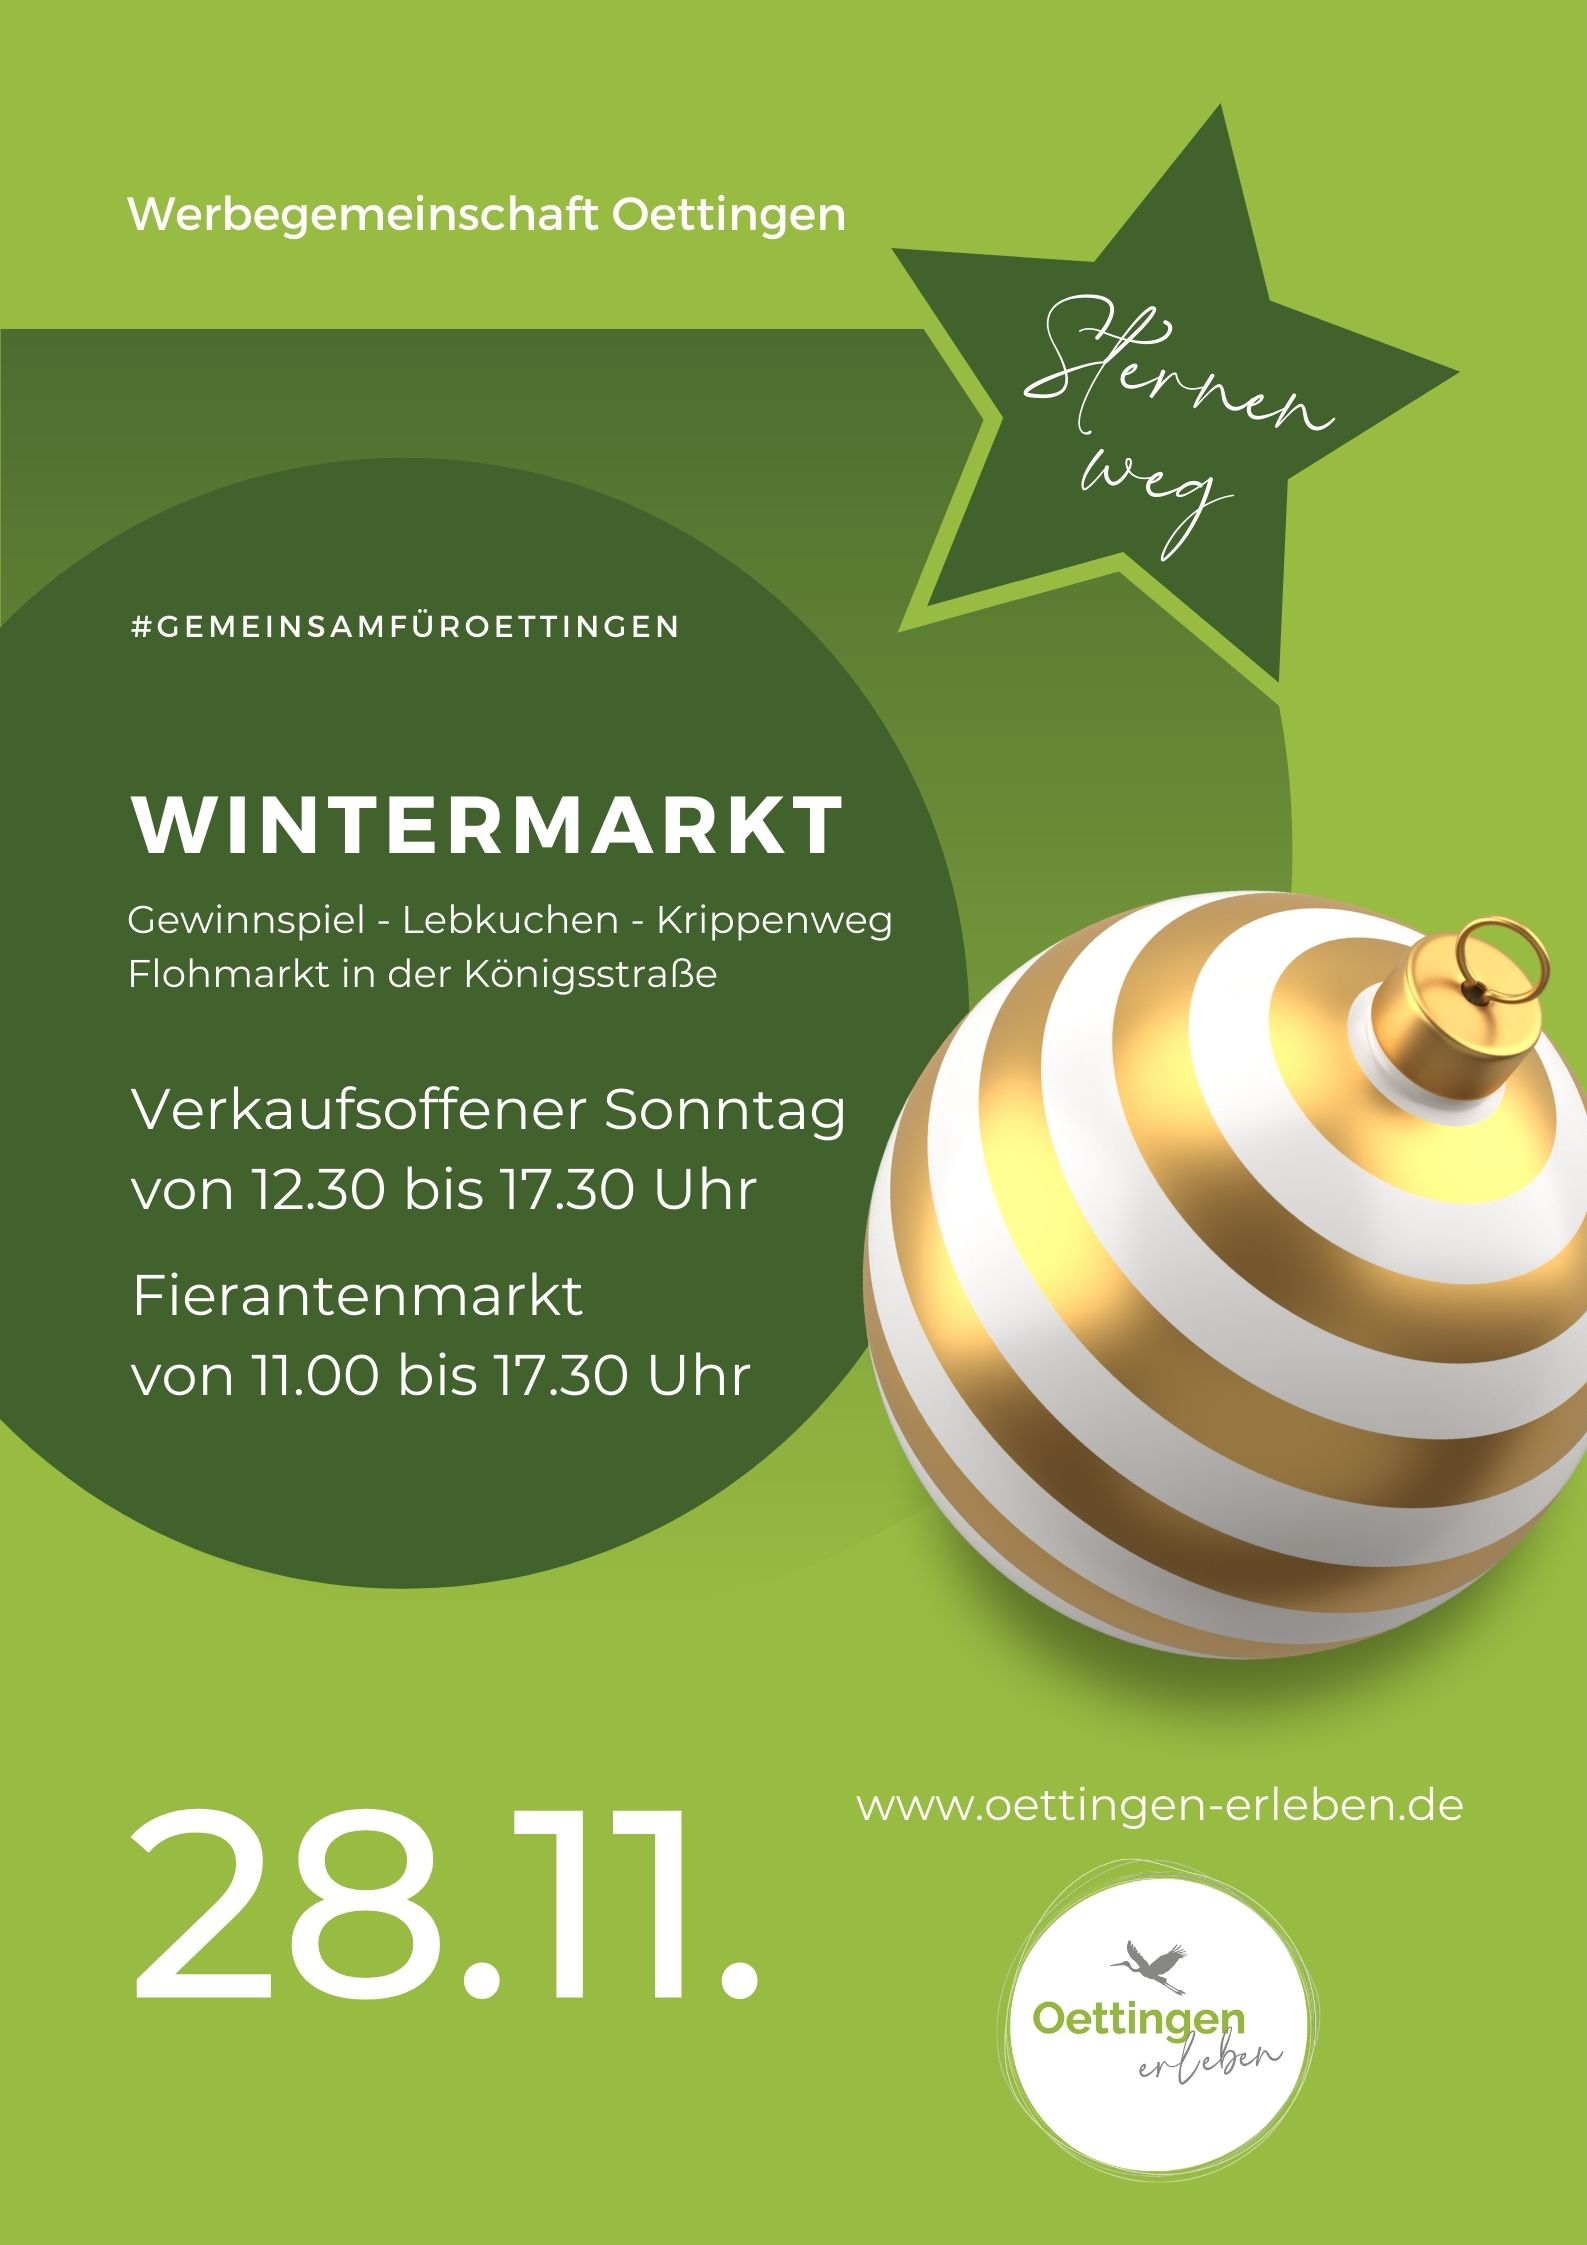 Wintermarkt 2021 - verkaufsoffener Sonntag von 12.30 bis 17.30 Uhr